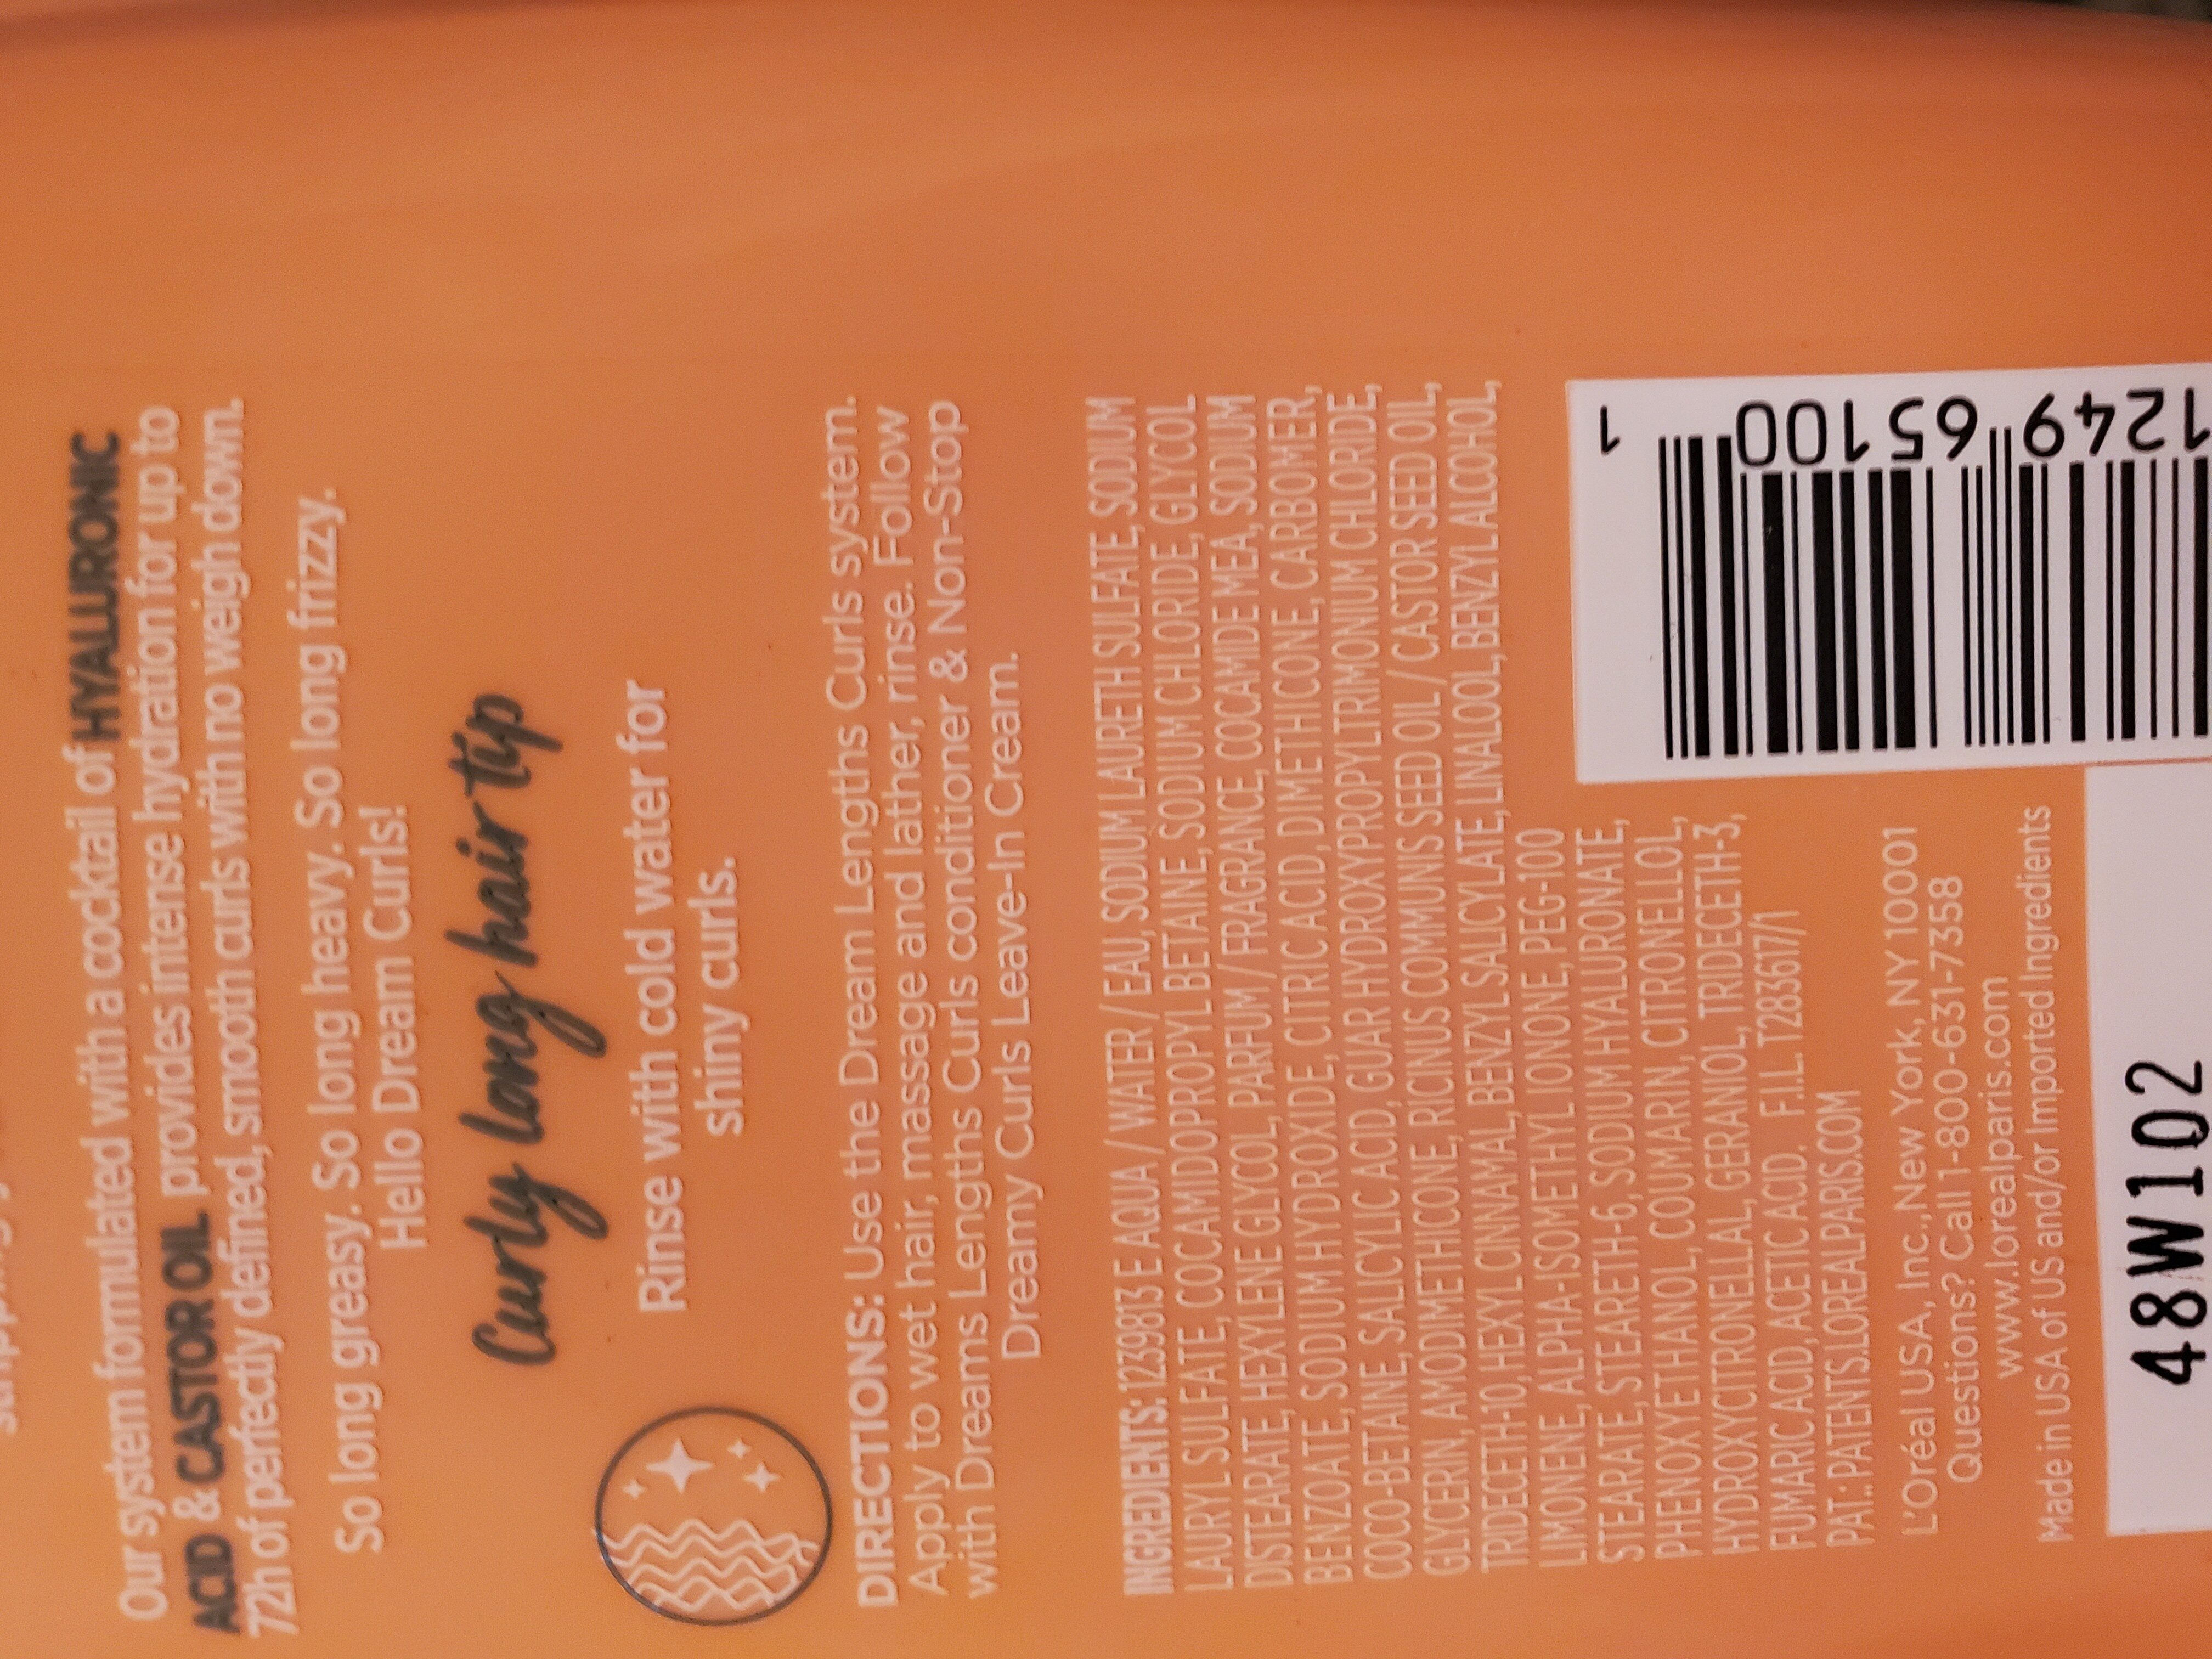 elvive shampoo - Ingredients